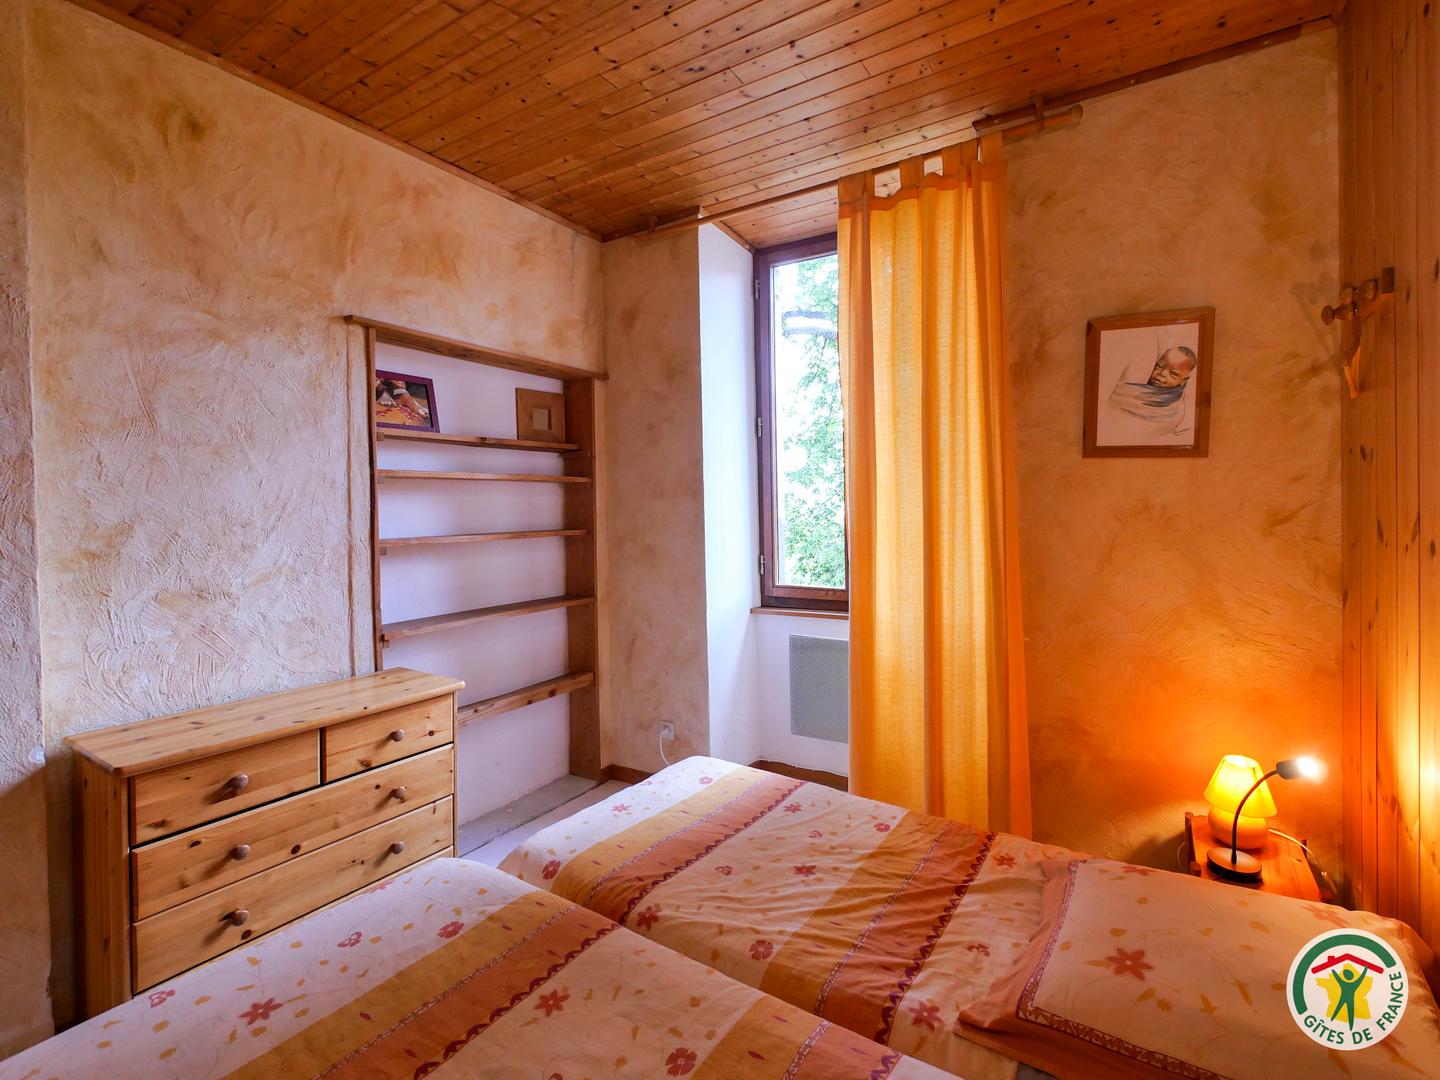 Logement GreenGo: Grand Gîte montagnard 9-11 pl., avec grand sauna tonneau chauffé au feu de bois, Gap, Hautes-Alpes - Image 6